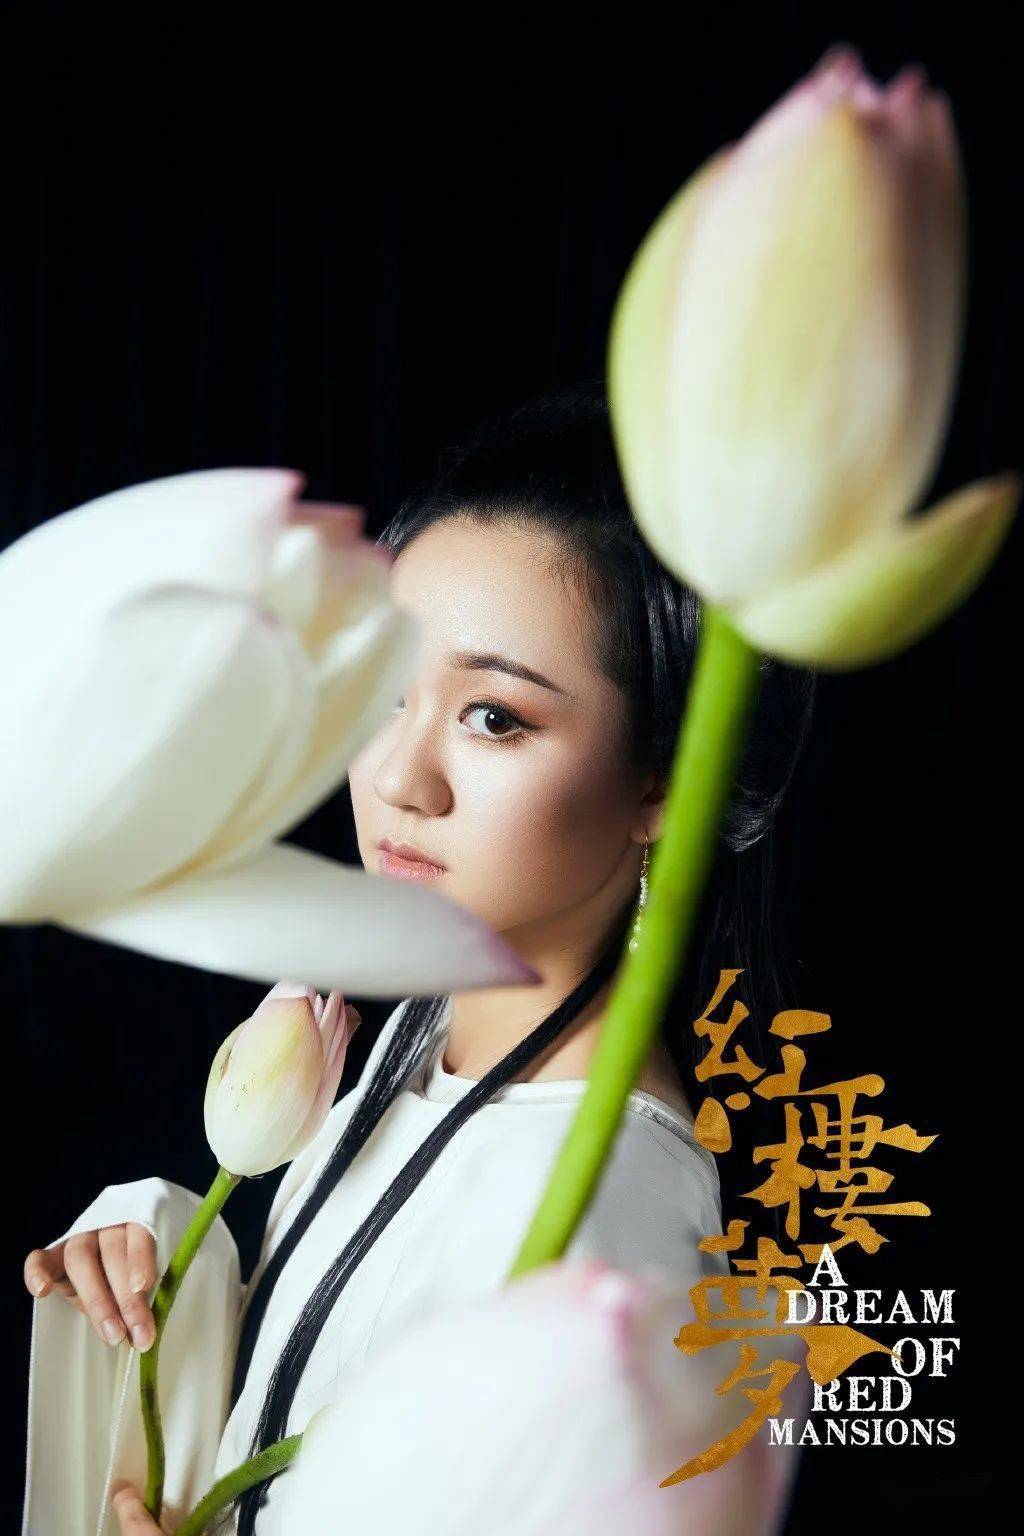 黎星李艳超主演舞剧《红楼梦》镜花水月版人物海报发布,绝绝子!